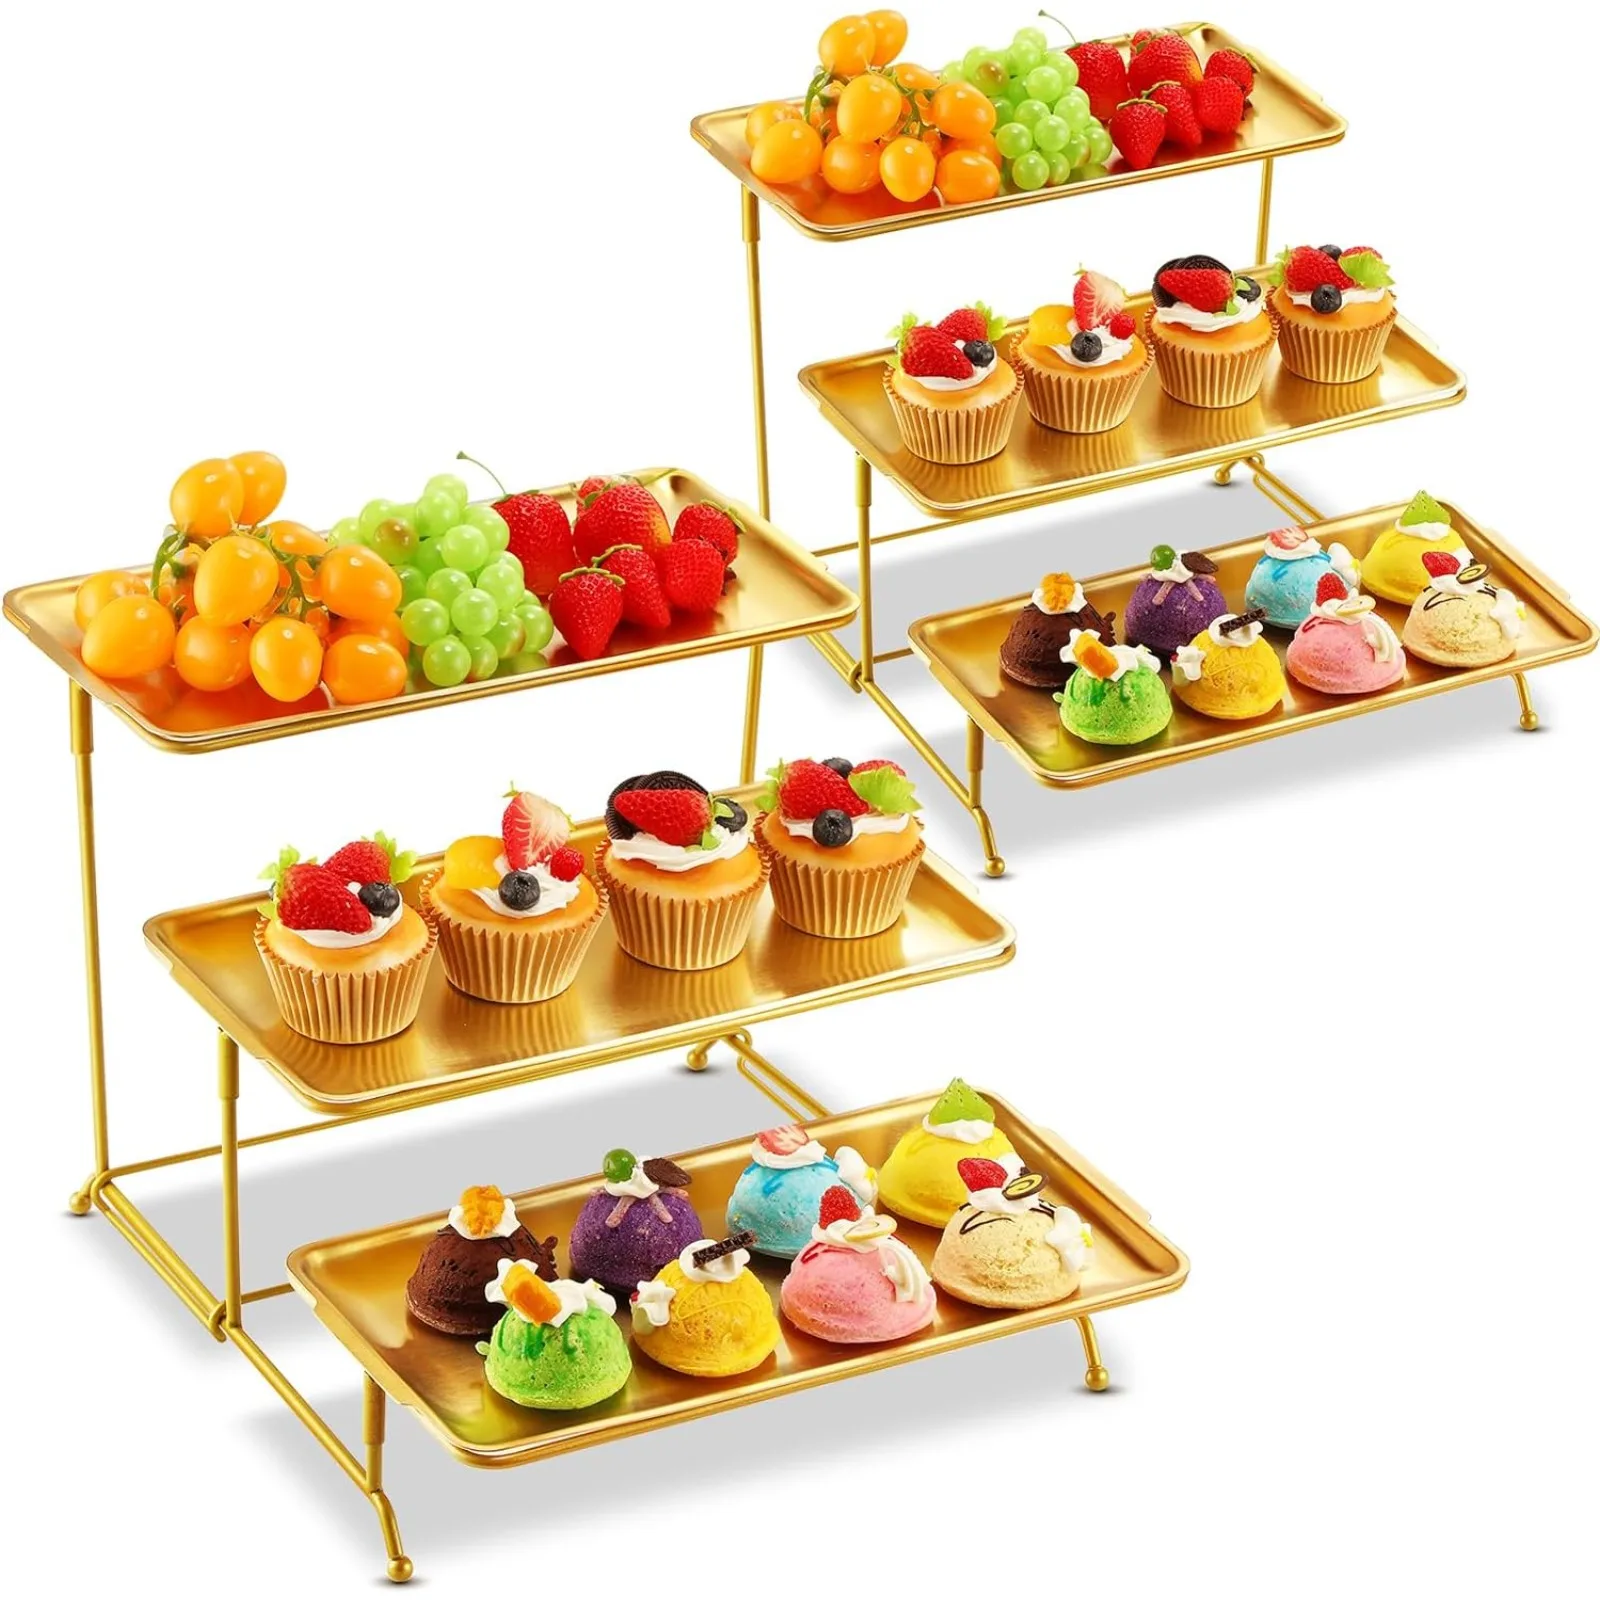 plateaux-de-service-en-acier-inoxydable-2-pieces-3-niveaux-presentoir-de-table-a-dessert-ensemble-d'assiettes-rectangulaires